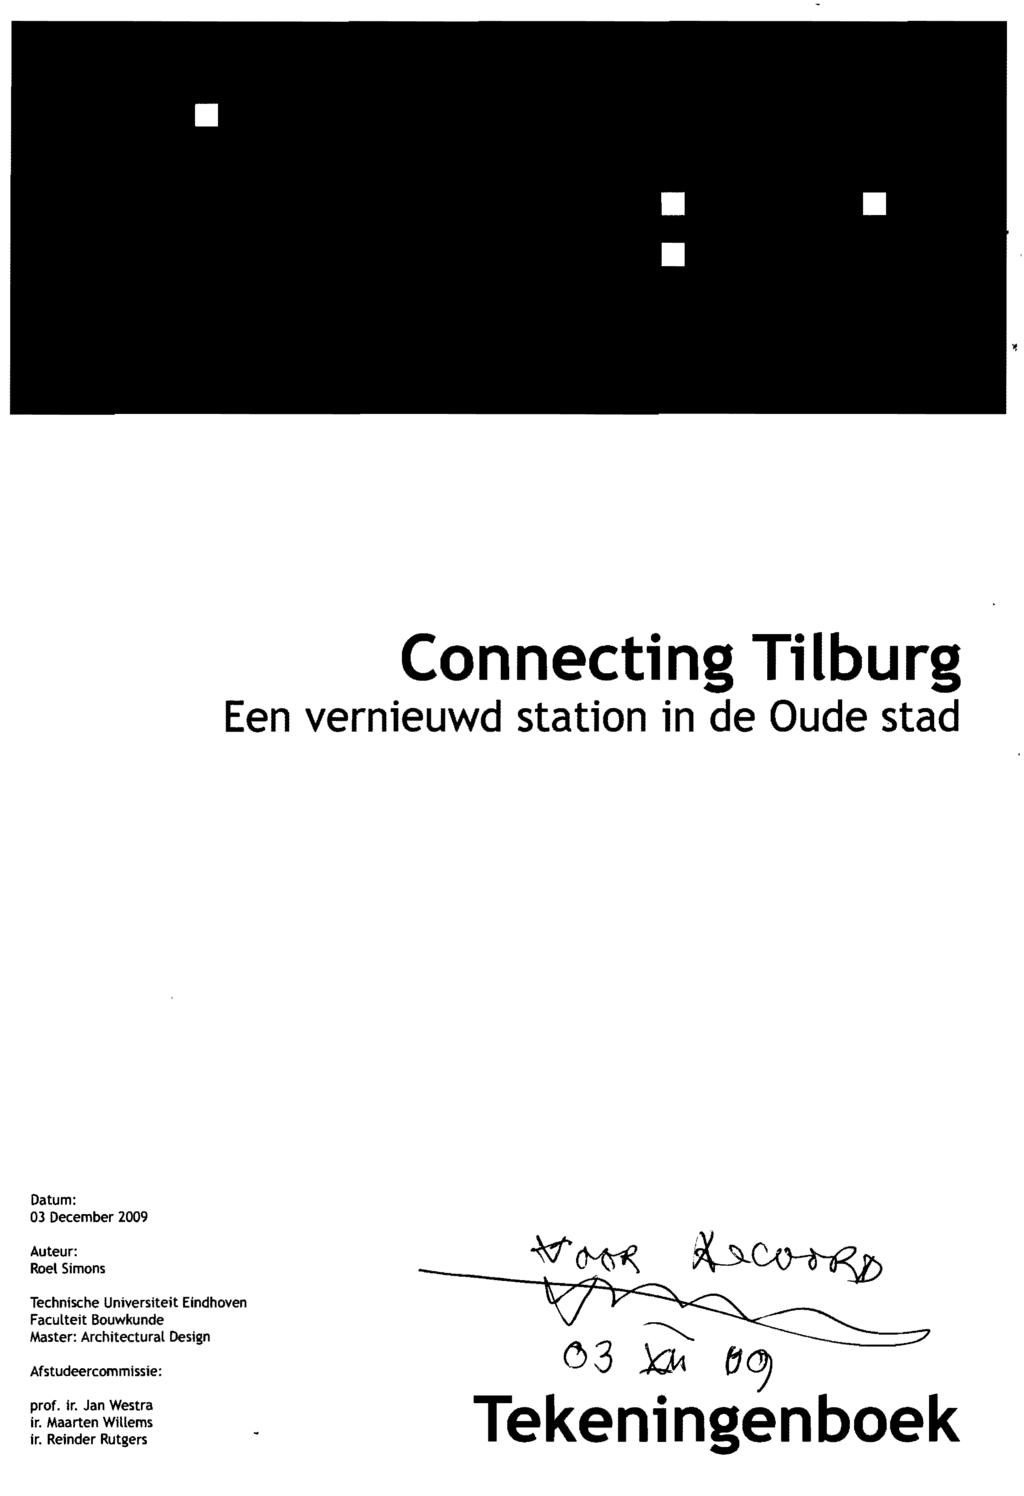 Connecting Tilburg Een vernieuwd station in de Dude stad Datum: 03 December 2009 Auteur: Roel Simons Technische Universiteit Eindhoven